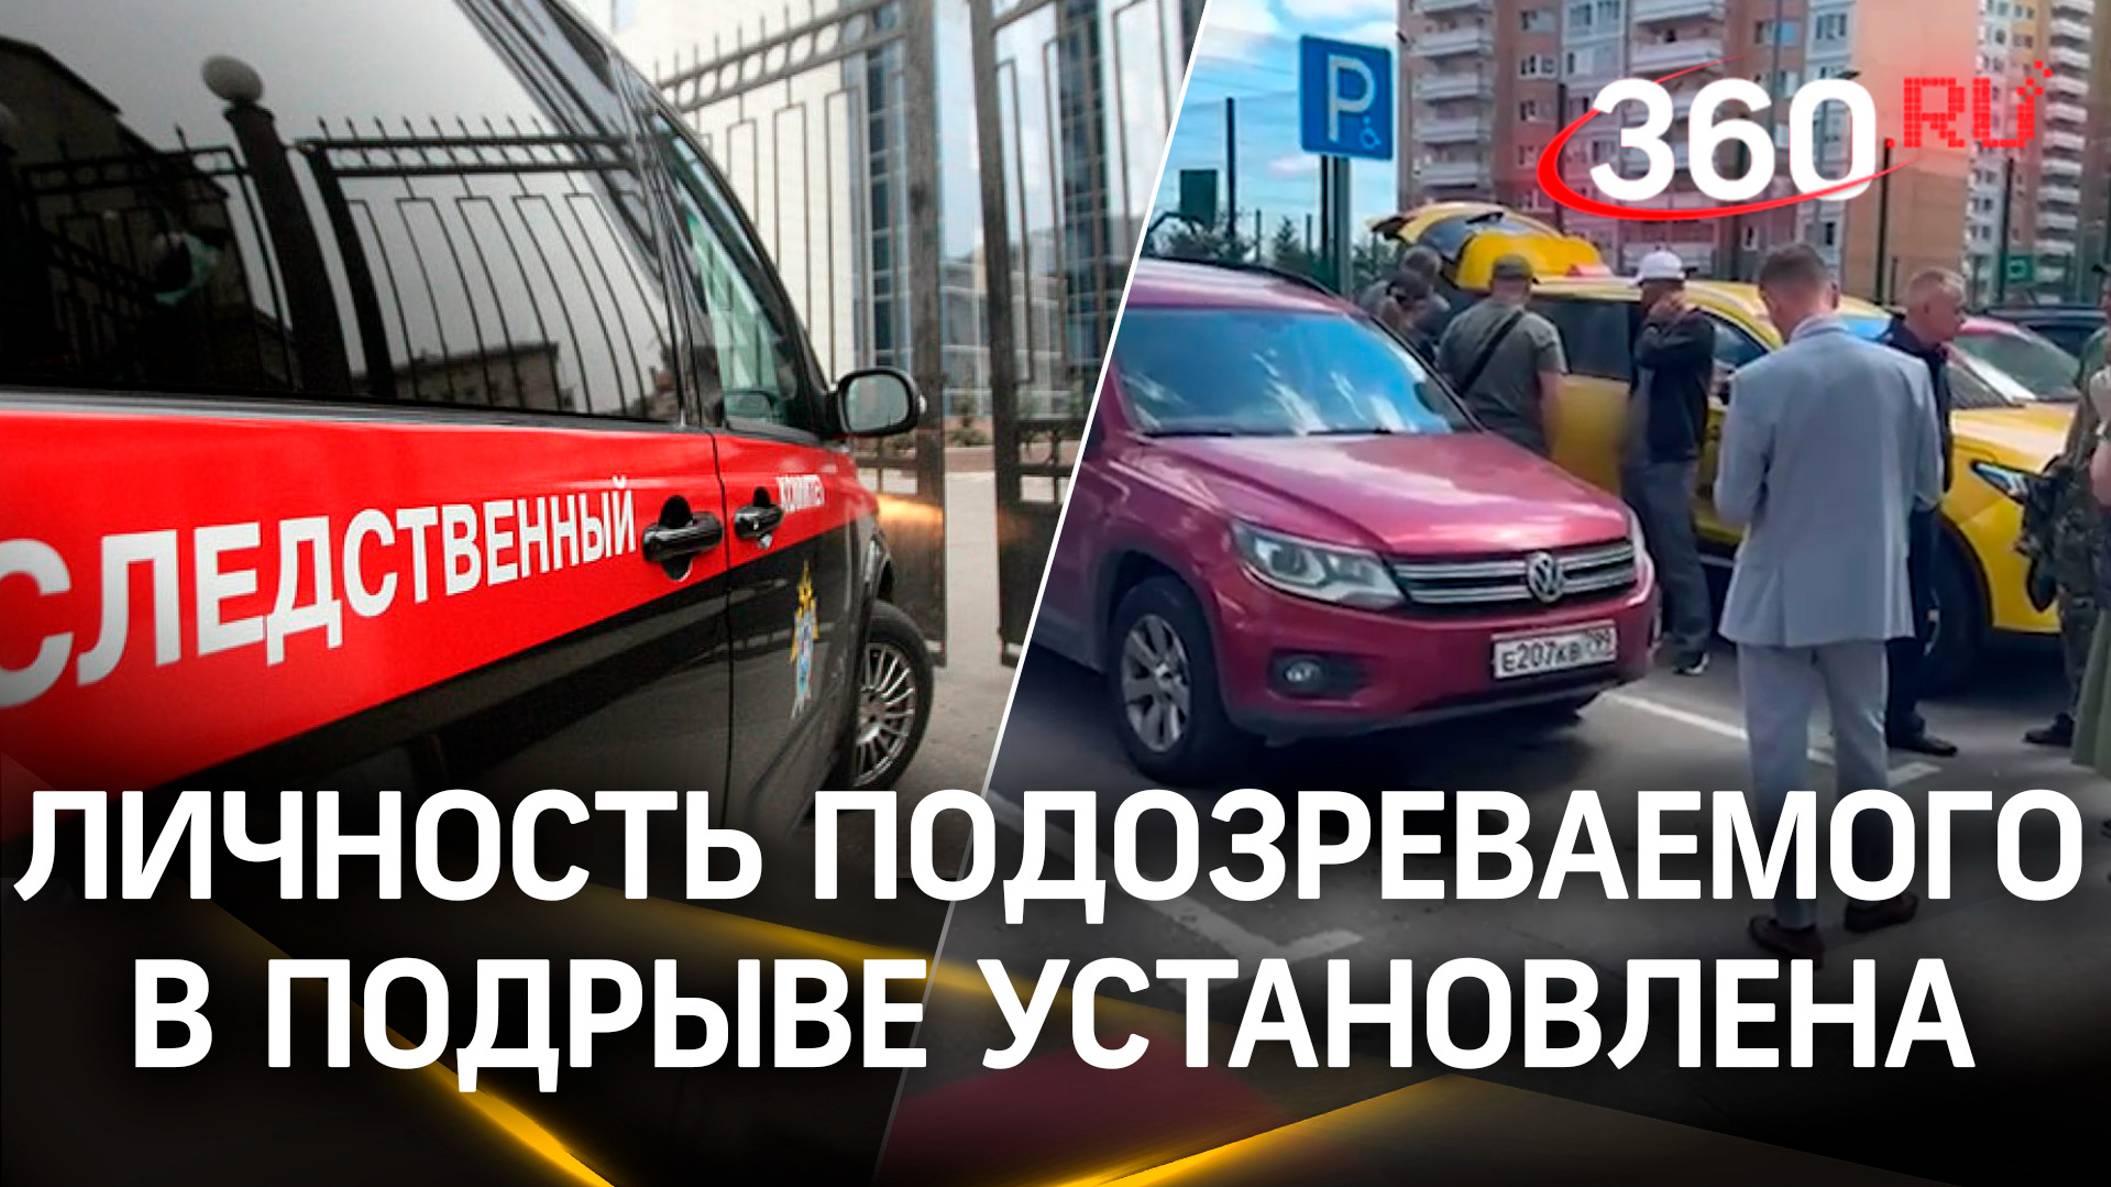 Личность исполнителя подрыва авто в Москве установлена, сообщил СК